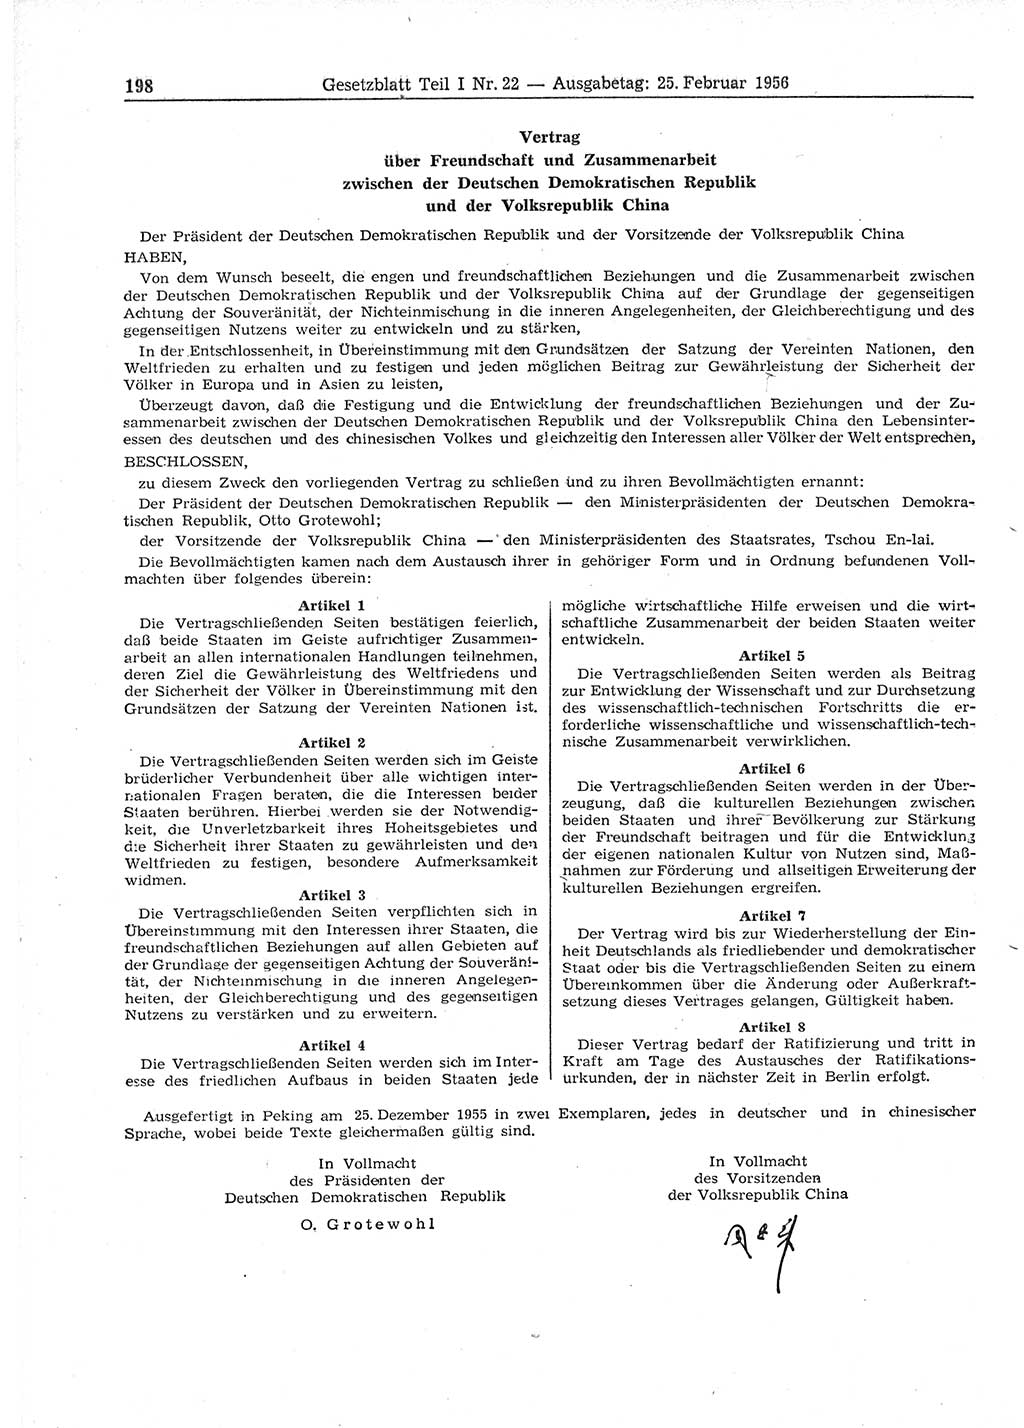 Gesetzblatt (GBl.) der Deutschen Demokratischen Republik (DDR) Teil Ⅰ 1956, Seite 198 (GBl. DDR Ⅰ 1956, S. 198)